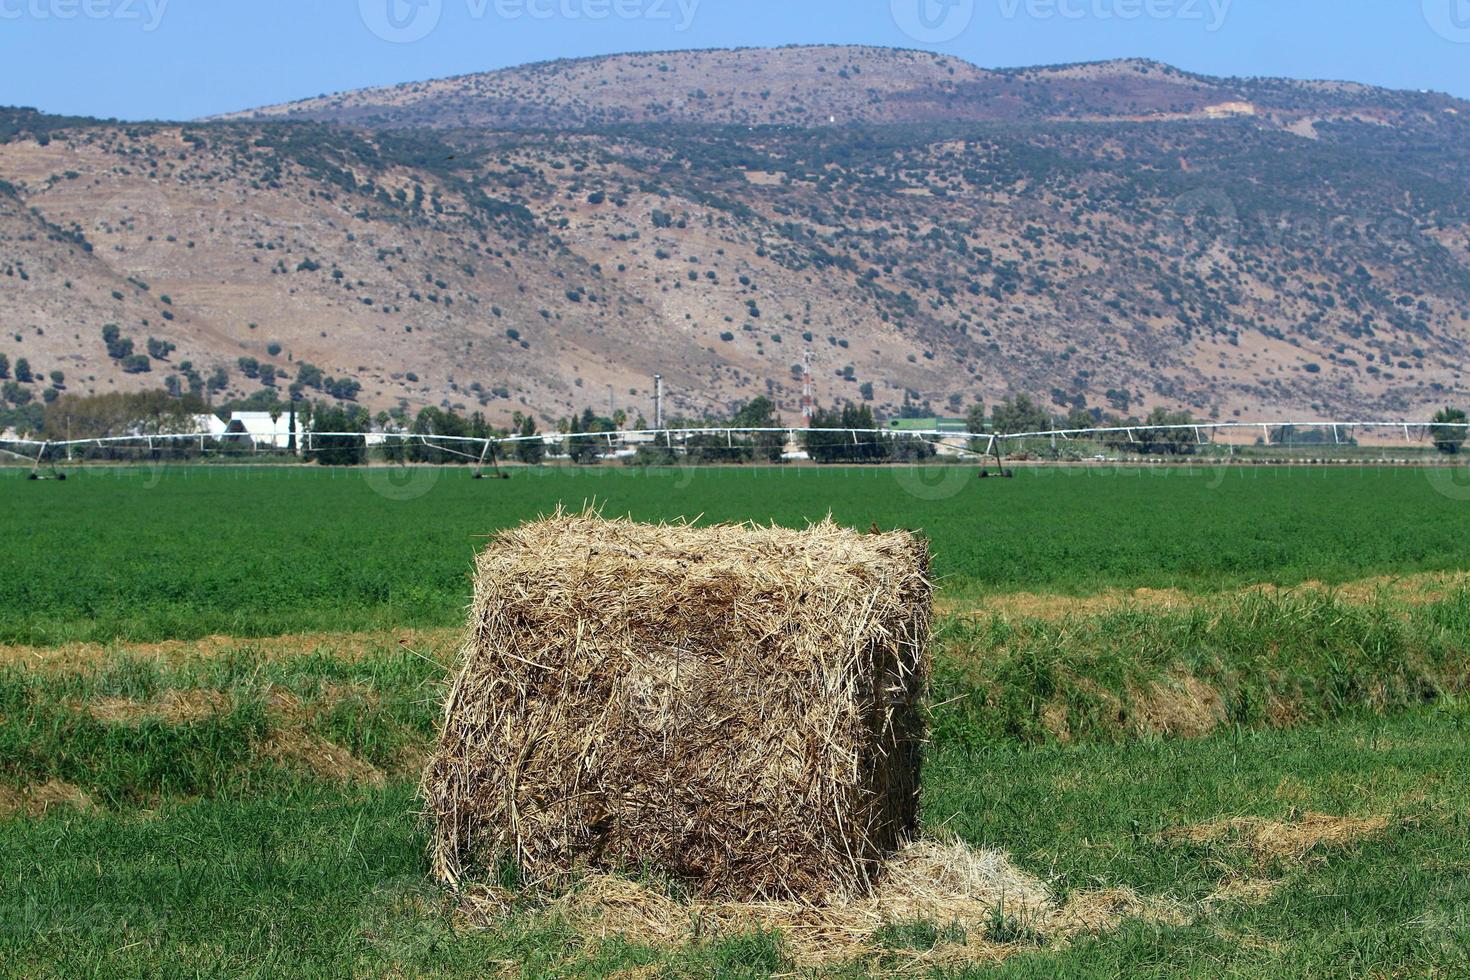 Strohhaufen liegen nach der Ernte von Weizen oder anderem Getreide auf dem Feld. foto